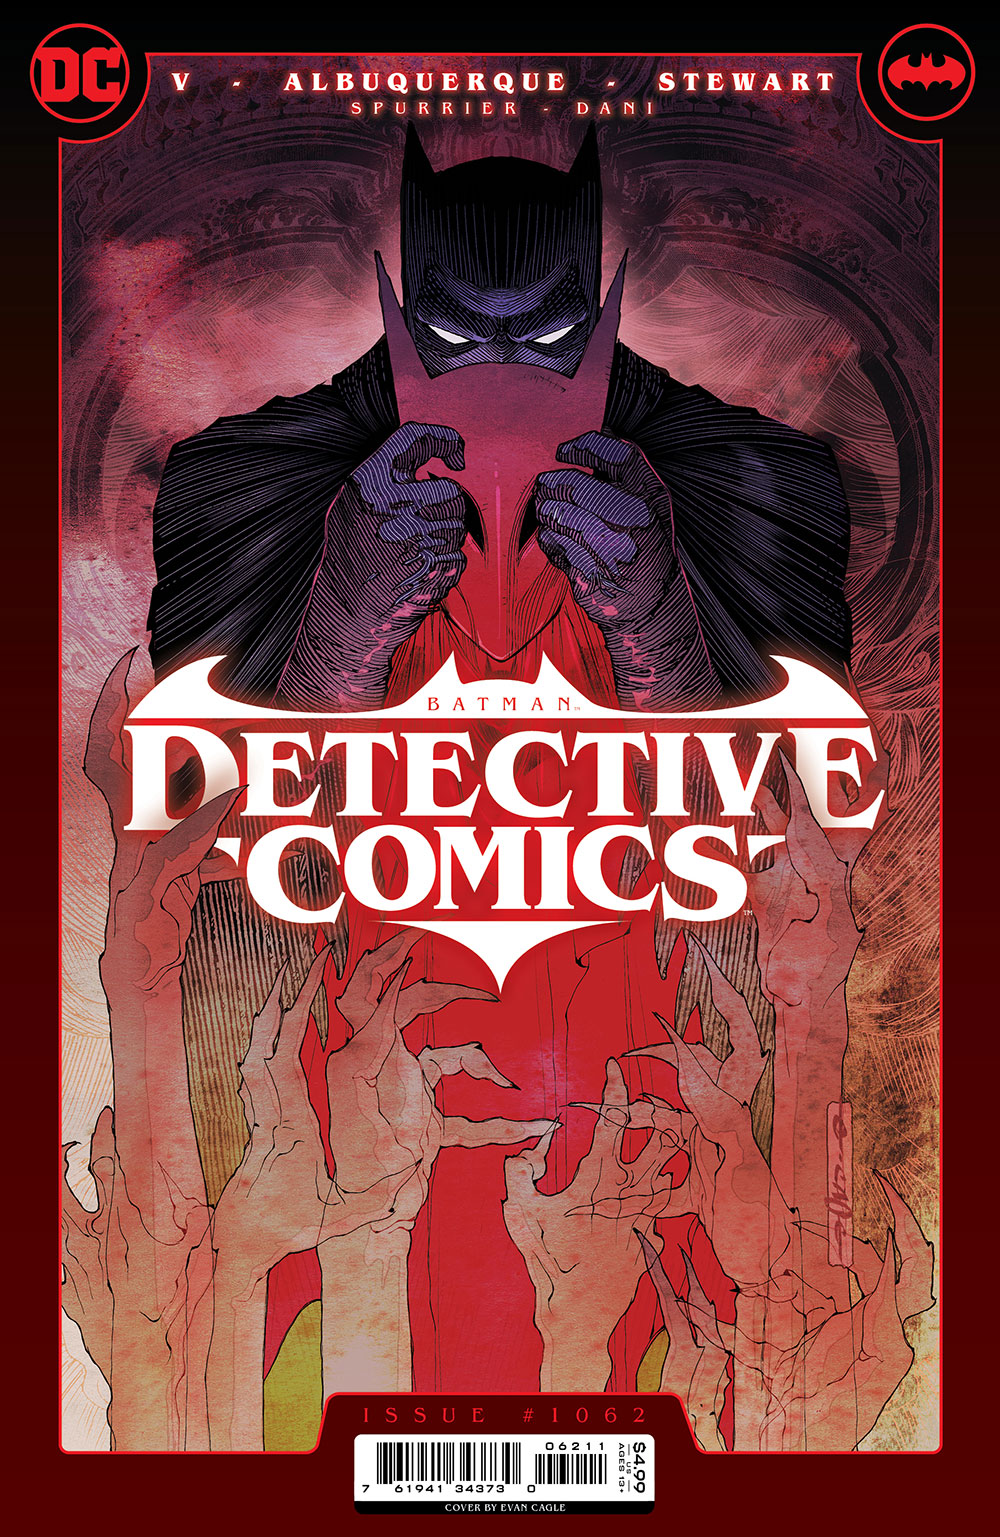 Detective Comics #1062 Cover A Evan Cagle (1937)